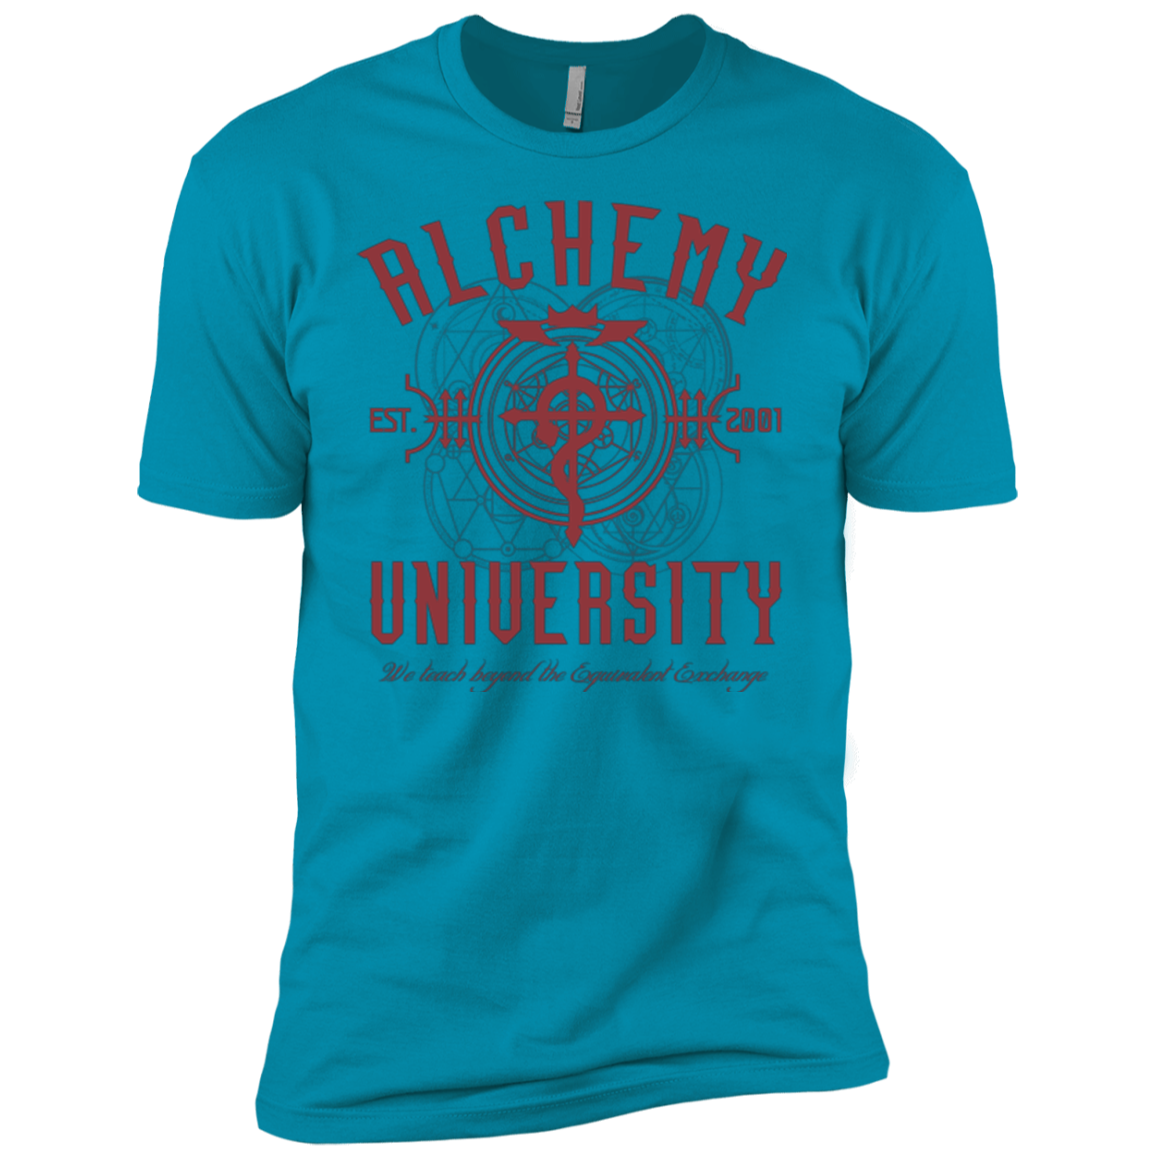 Alchemy University Boys Premium T-Shirt